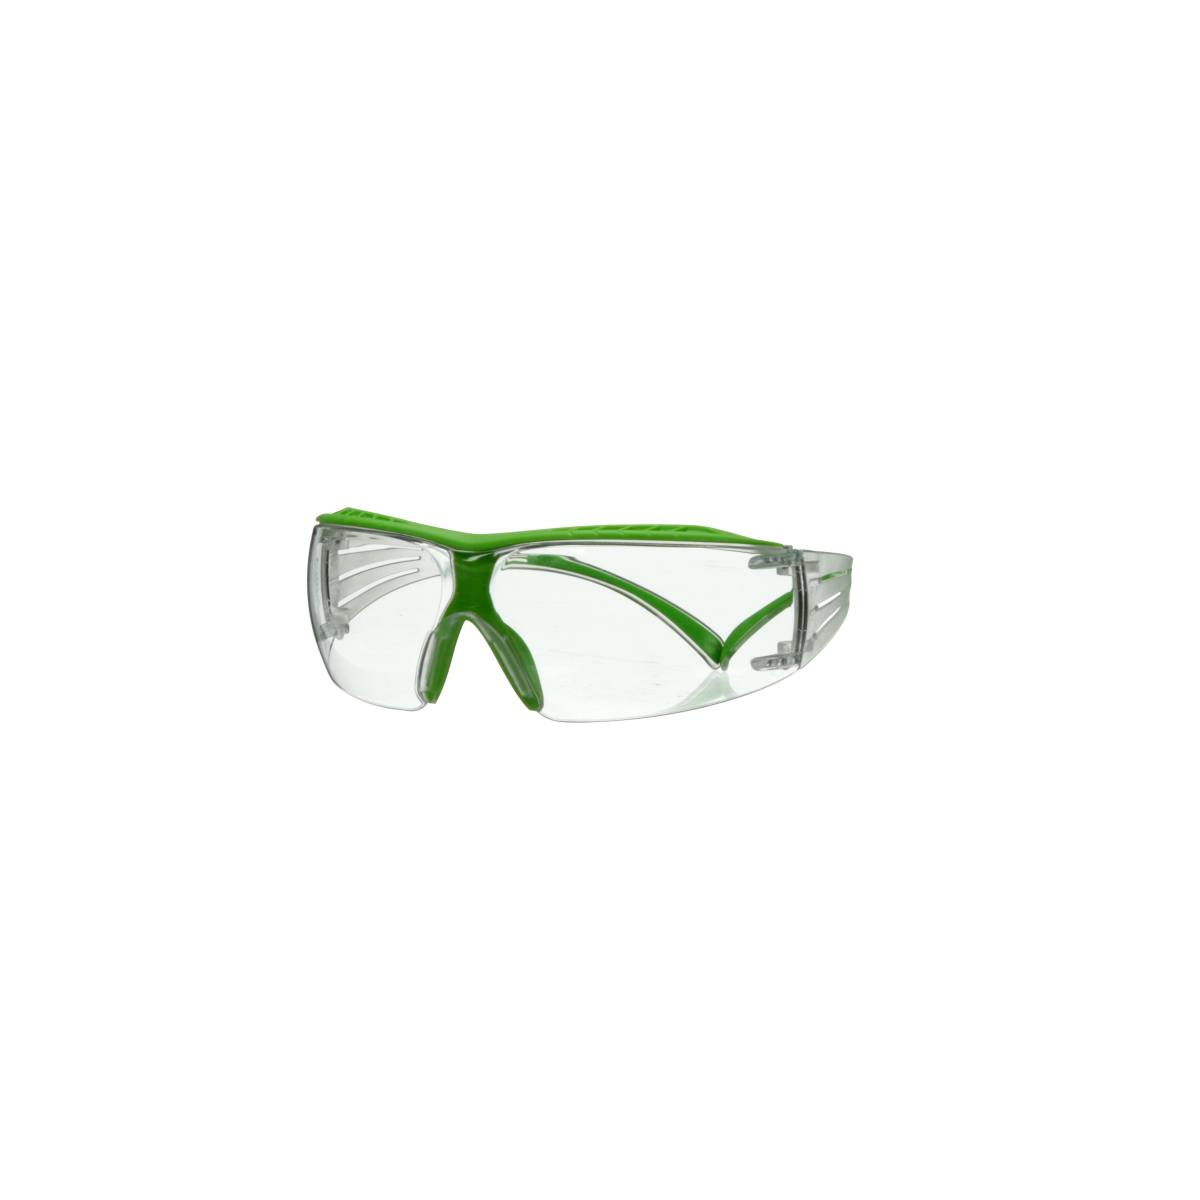 3M SecureFit 400X Schutzbrille, Gestell grün-transparent, Scotchgard Anti-Fog-Beschichtung (K/N), klare Scheibe, SF401XSGAF-GRN